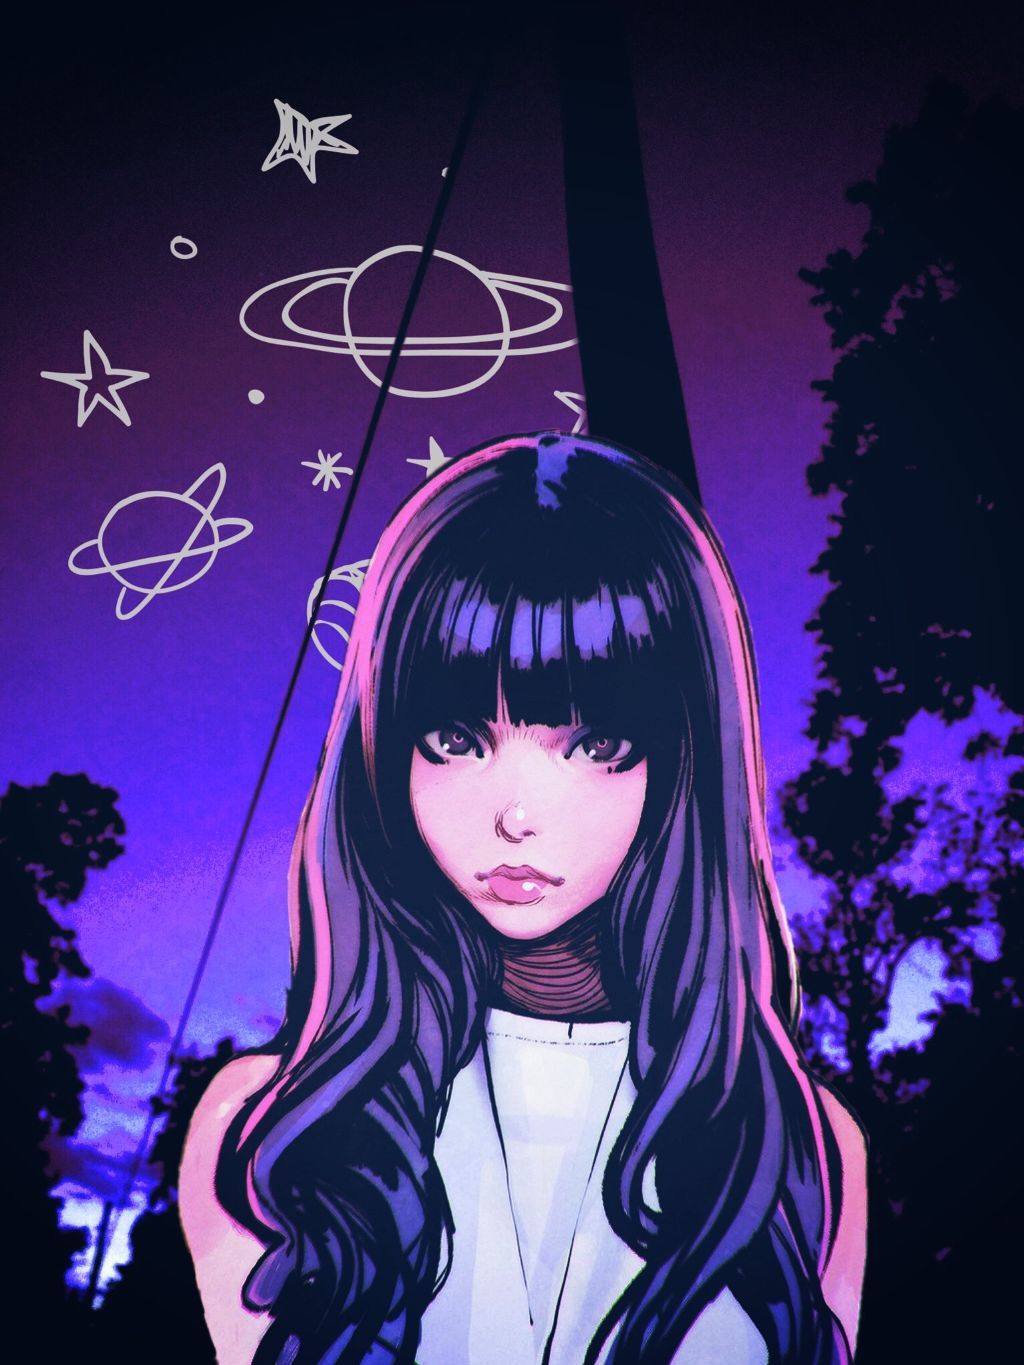 Anime Girls Aesthetic Wallpaper Anime Girl Purple Aesthetic | Hot Sex ...